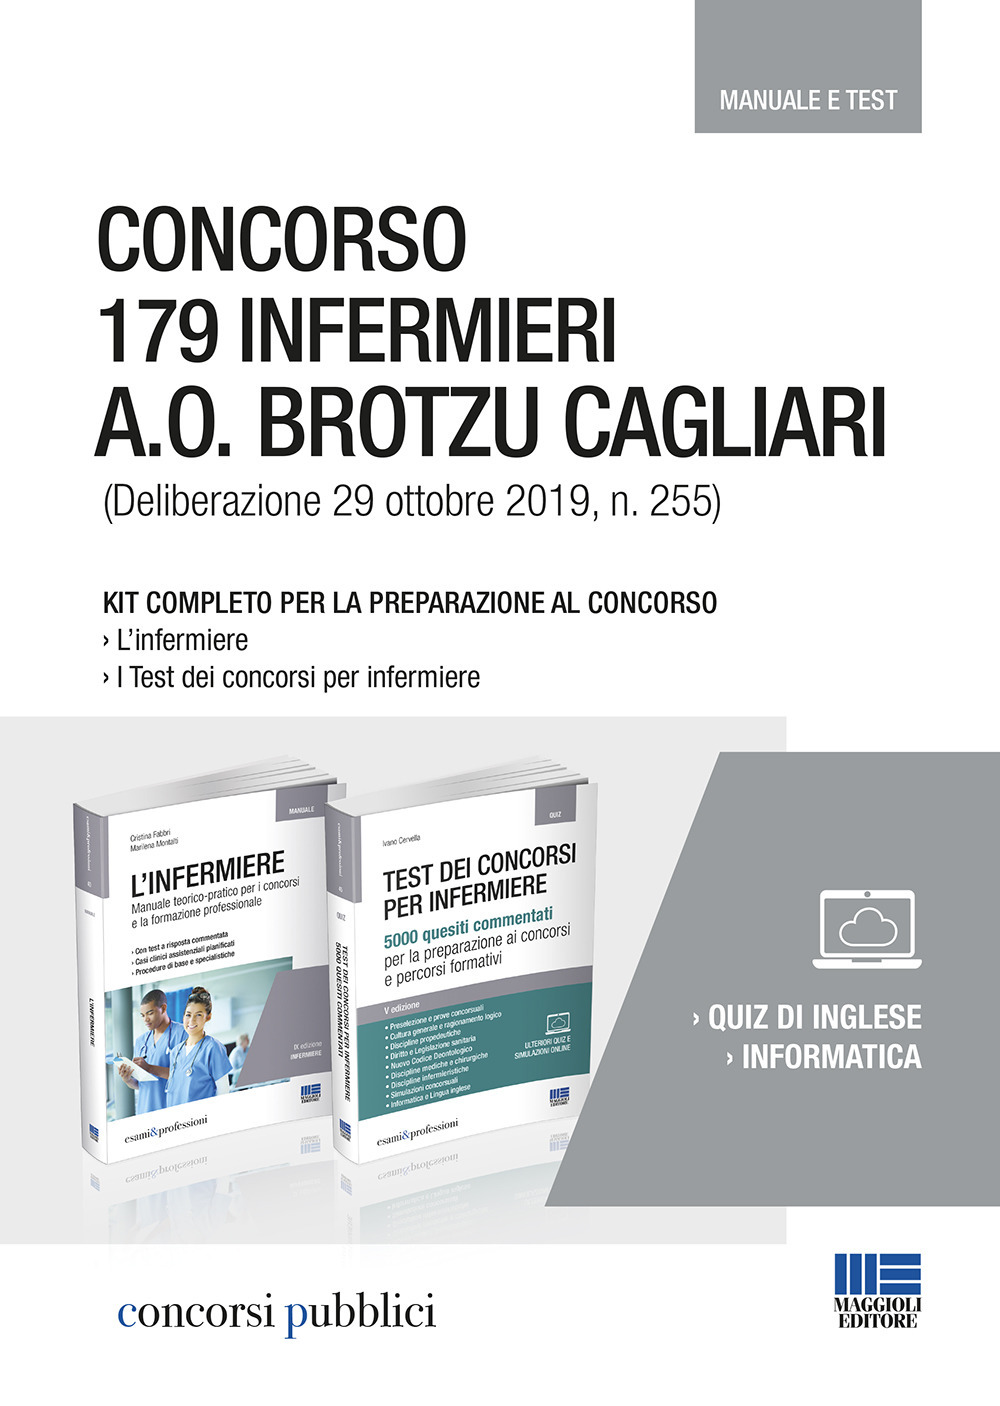 Concorso 179 infermieri A. O. Brotzu Cagliari (Deliberazione 29 ottobre 2019, n. 255). Kit completo per la preparazione al concorso. Manuale e test